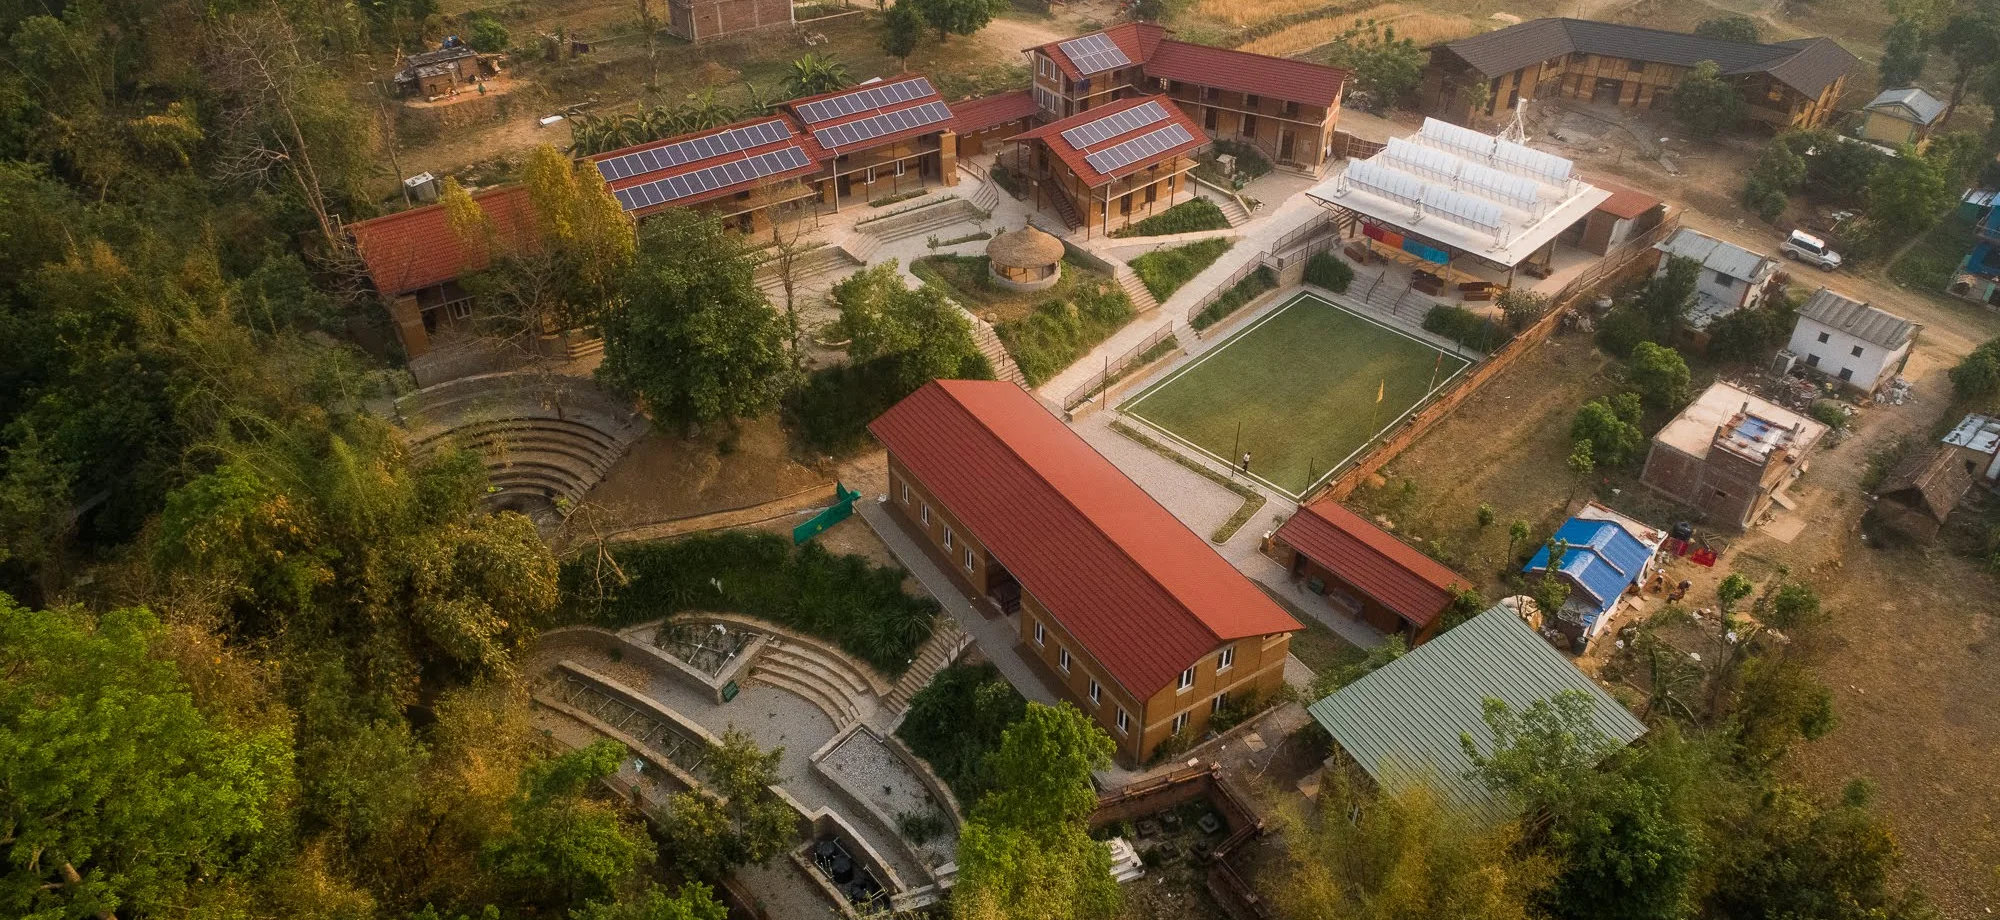 School Bird's eye view of modern school in Nepal